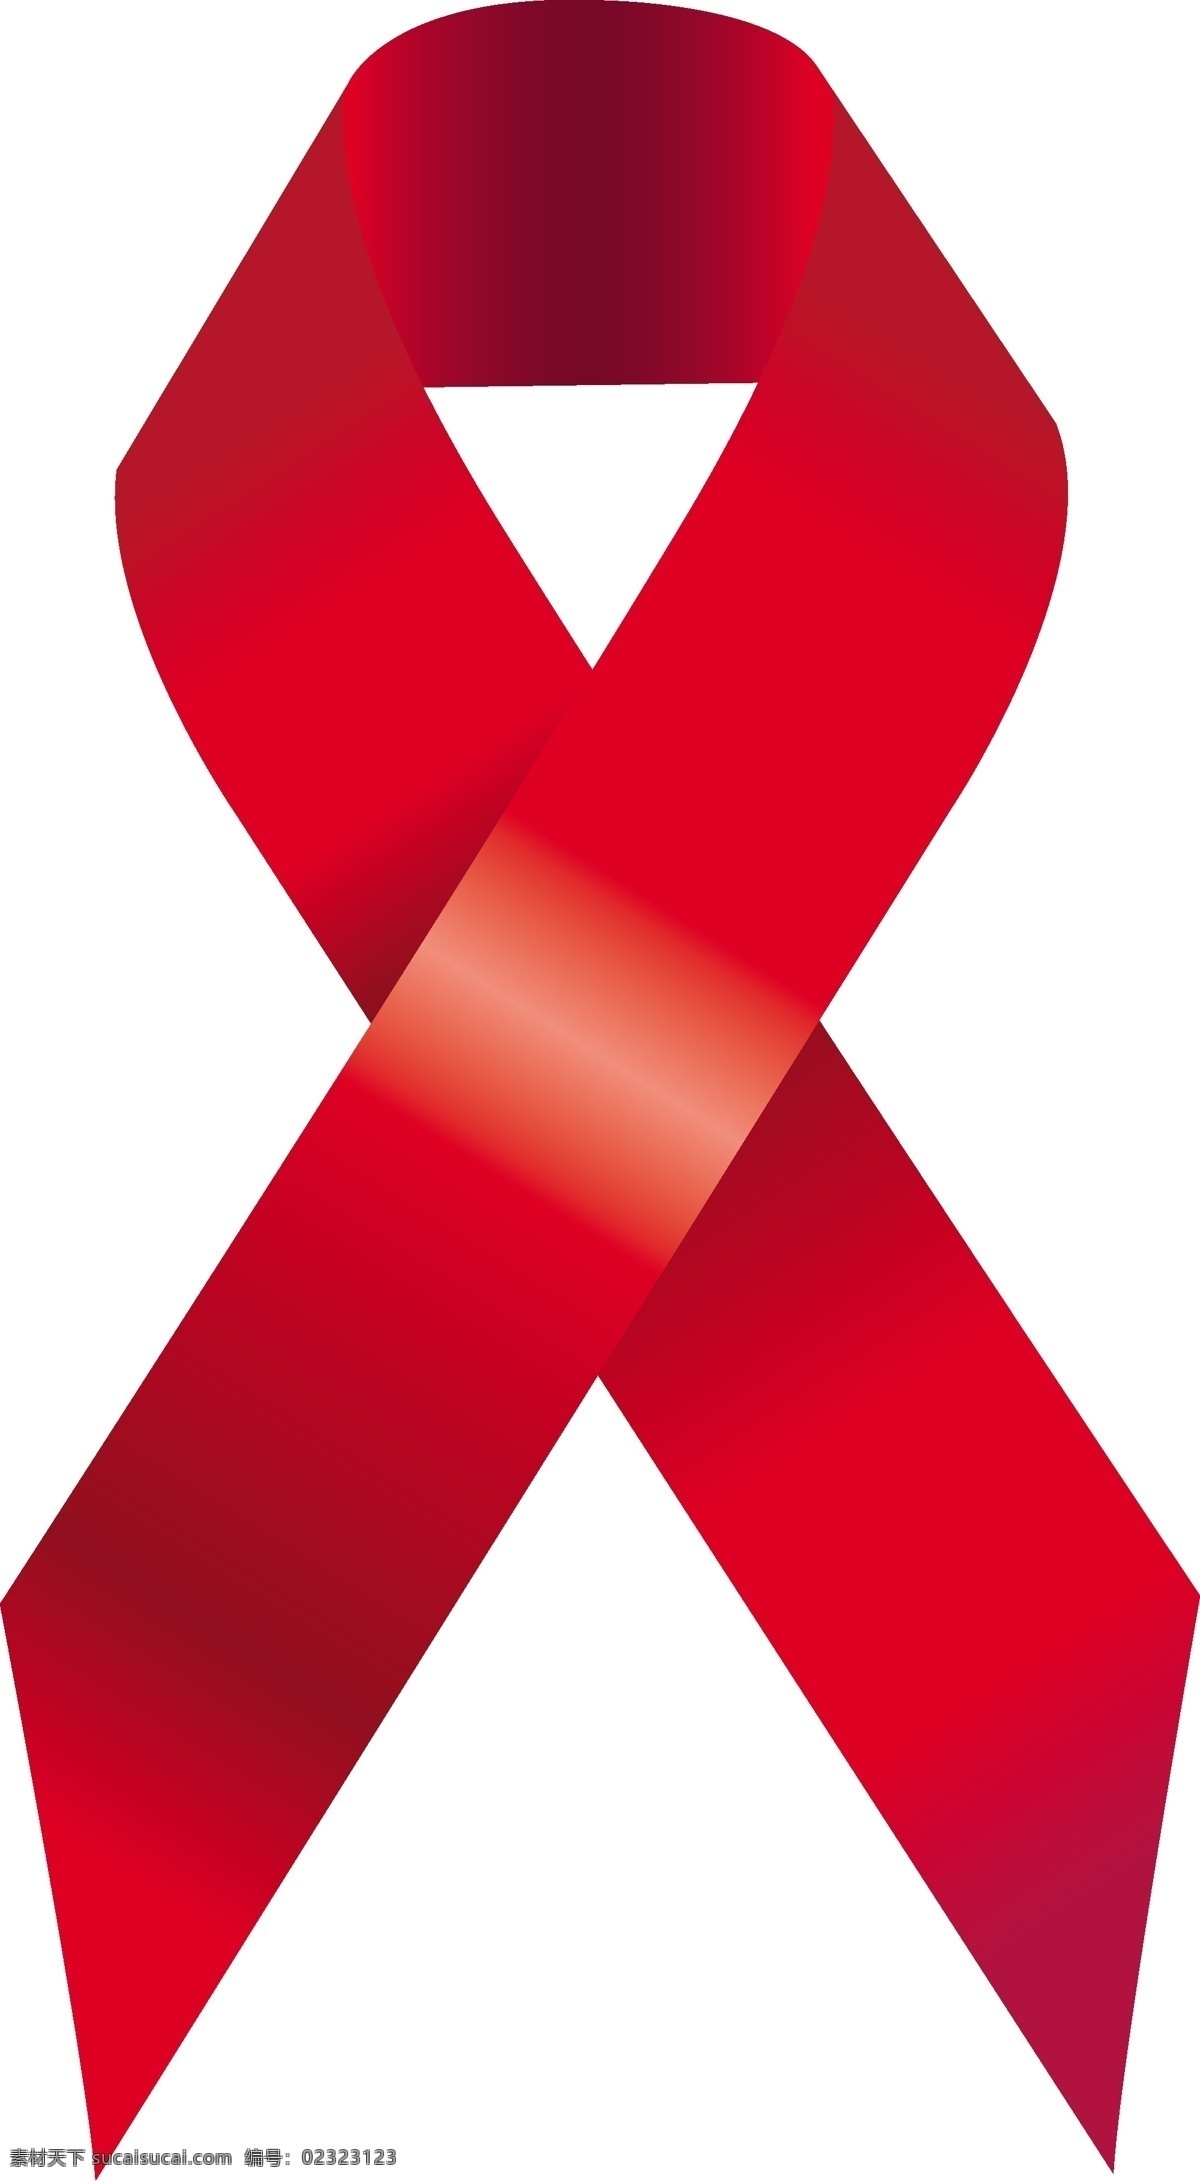 aids 艾滋病 标志 矢量 sxzj 帮助 关爱 红丝带 矢量素材 矢量图 其他矢量图